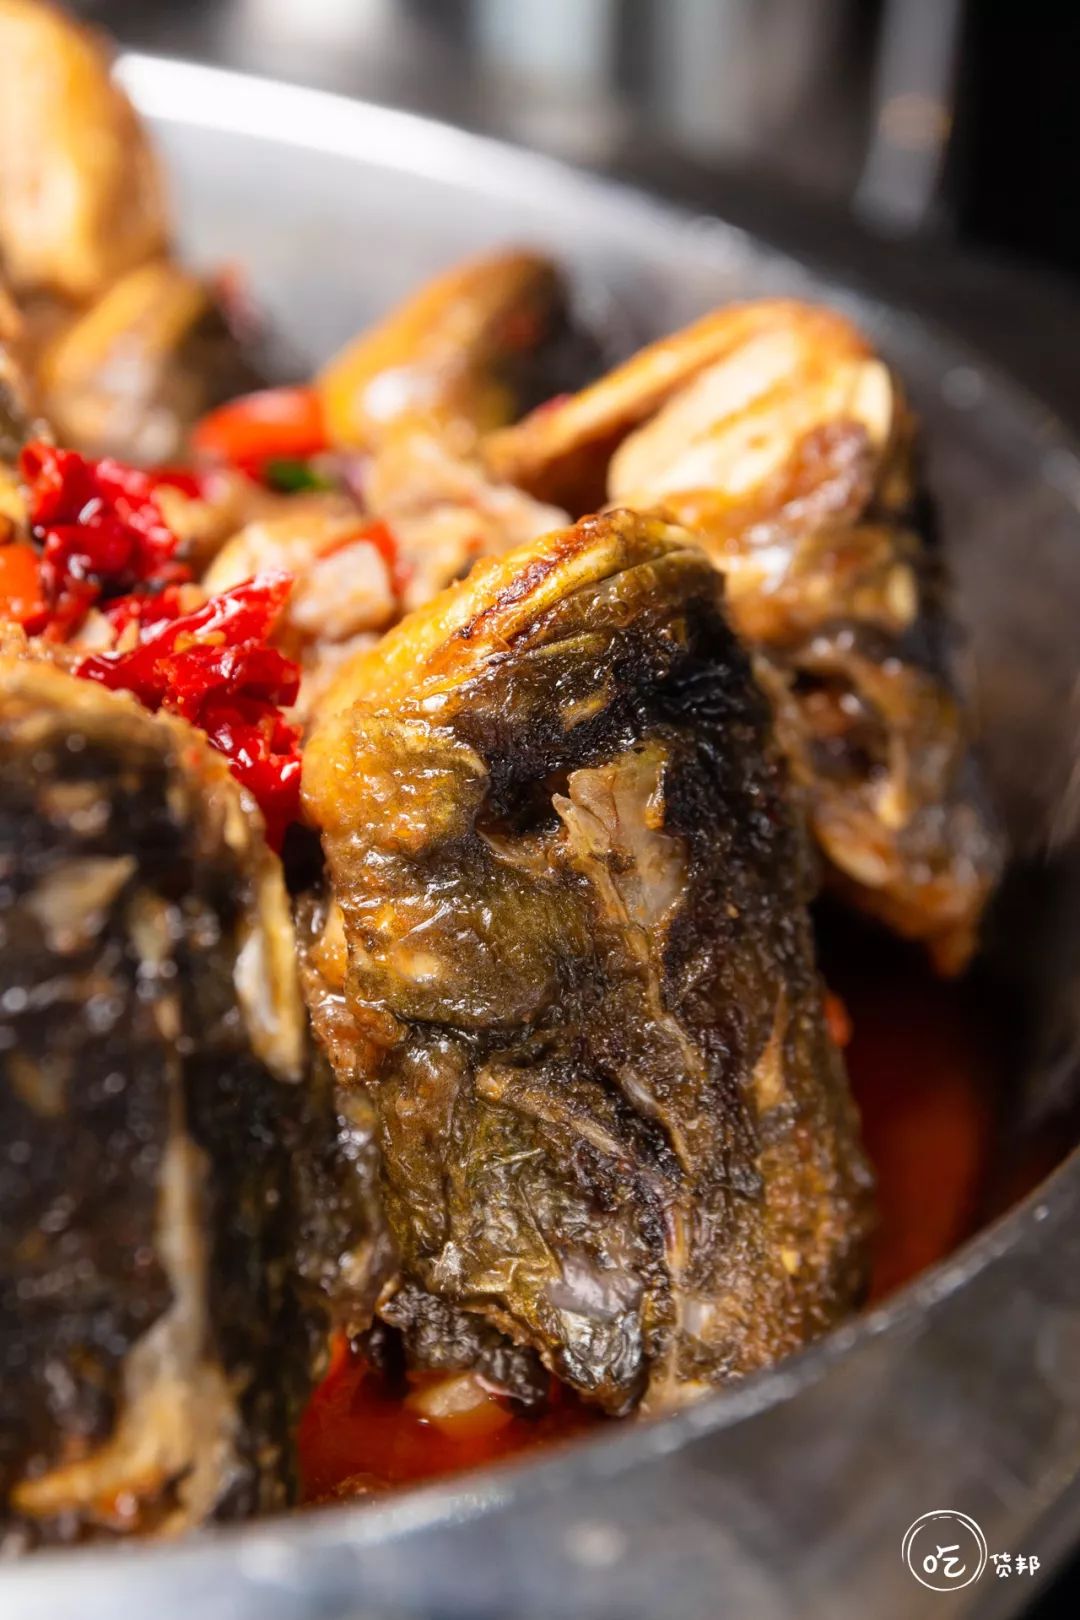 这道干锅鱼嘴是越嚼越香,不仅有汤汁的浓香,还带着鱼肉特有的鲜香,吃